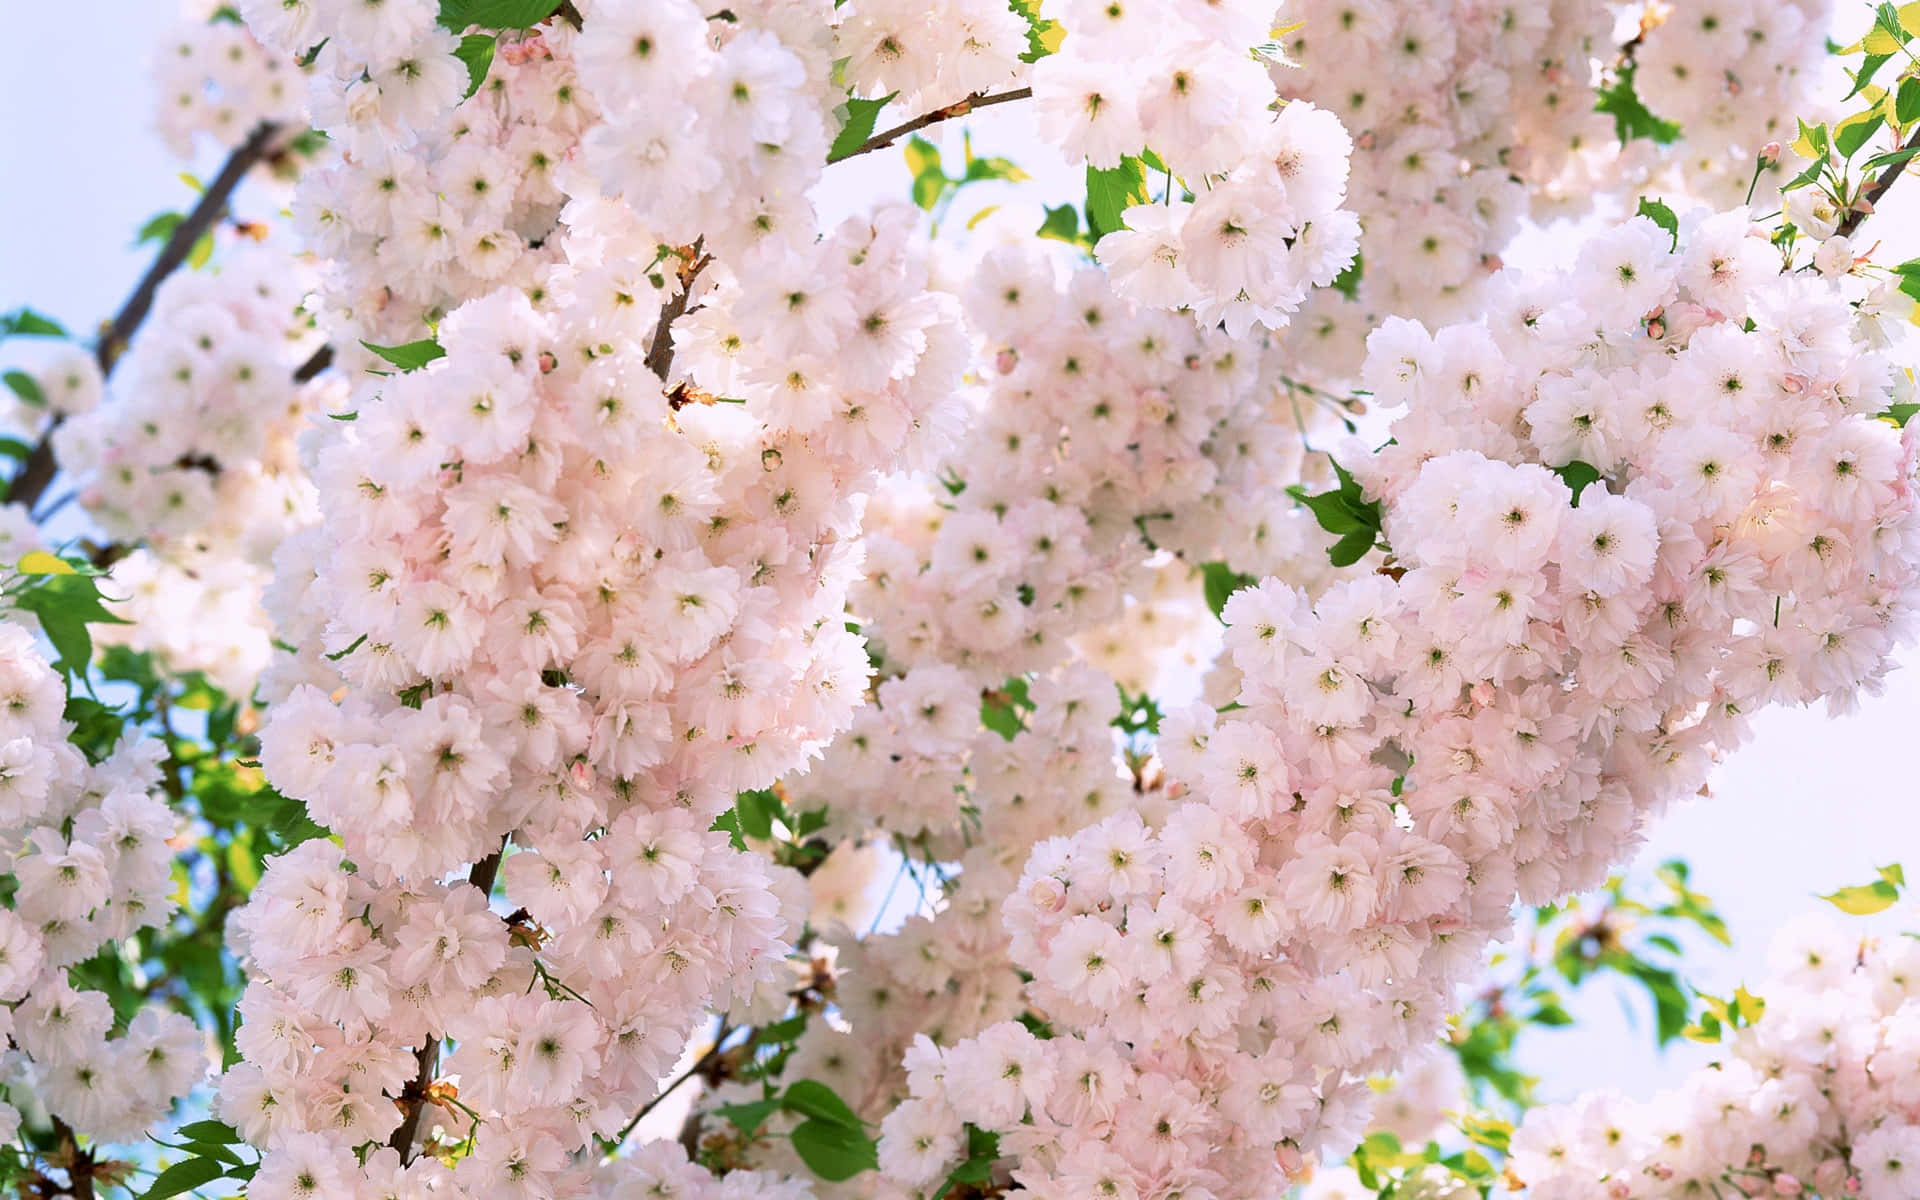 Fascinanteencanto Floral En Tumblr